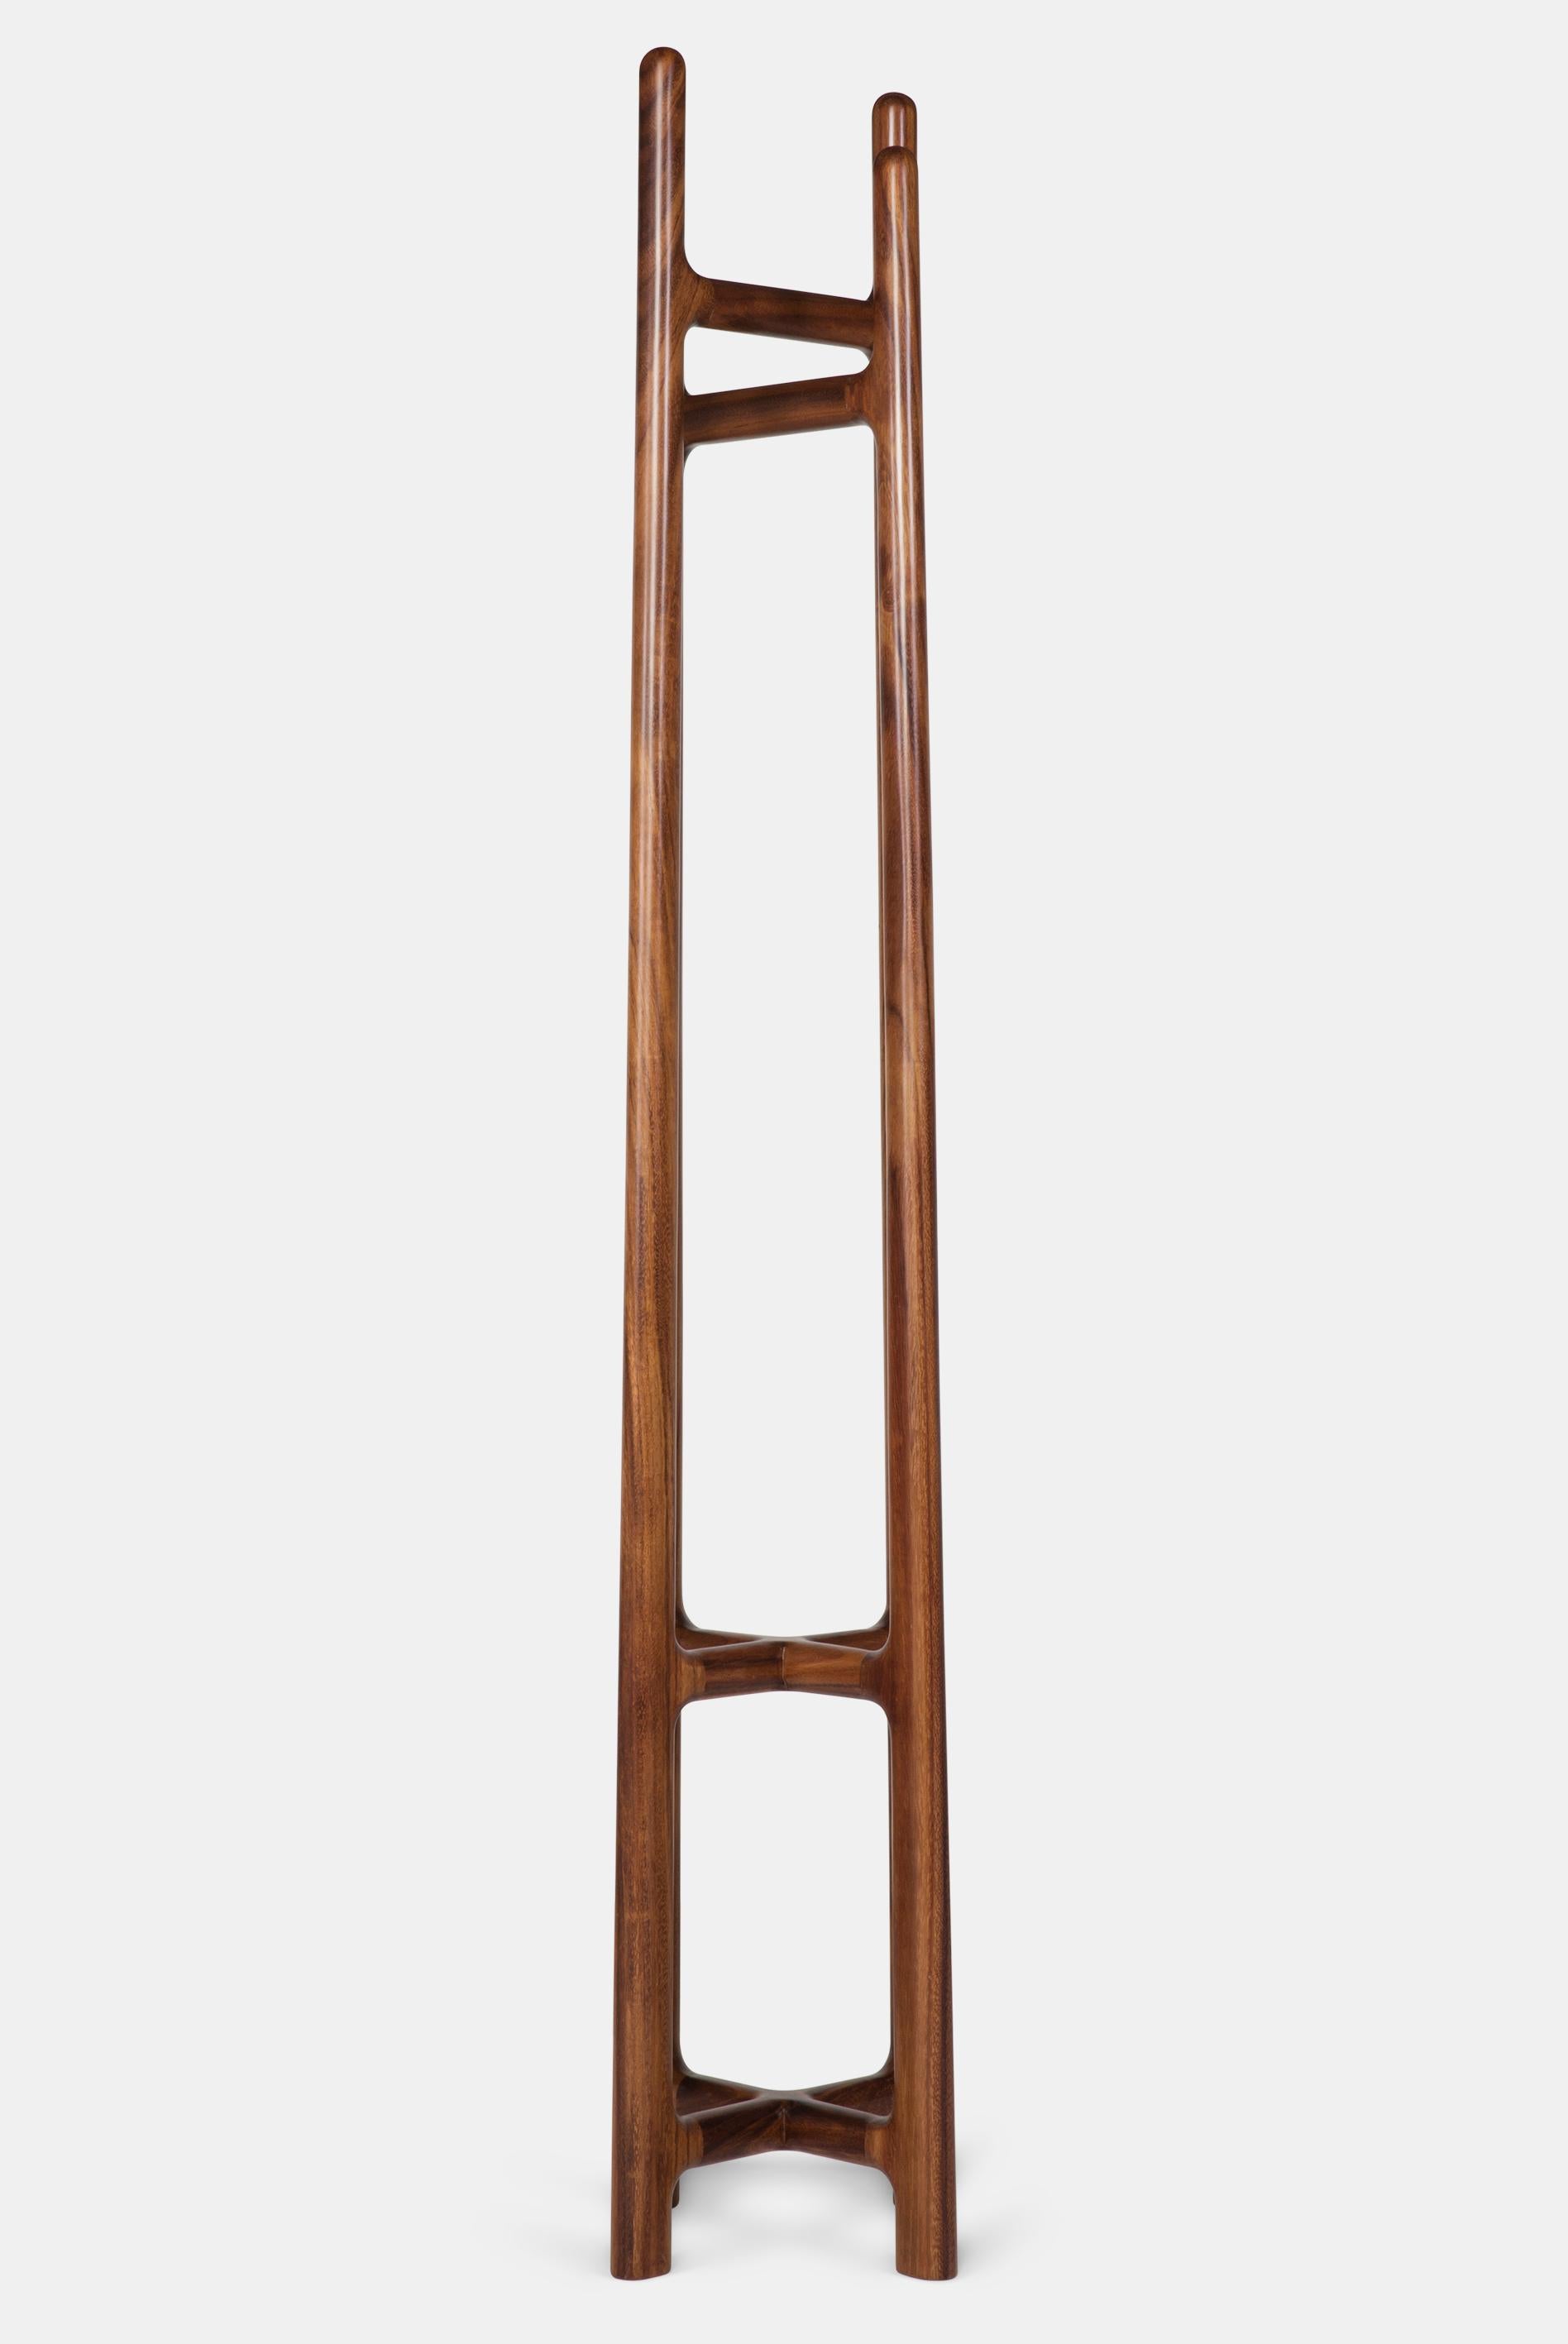 Dieser Standgarderobenständer hat einen kontrastierenden Schnittpunkt zwischen seinen 4 Beinen, der ein einzigartiges und dynamisches Aussehen erzeugt, das in Kombination mit hochwertigem, massivem Hartholz einen unverwechselbaren, eleganten Ständer